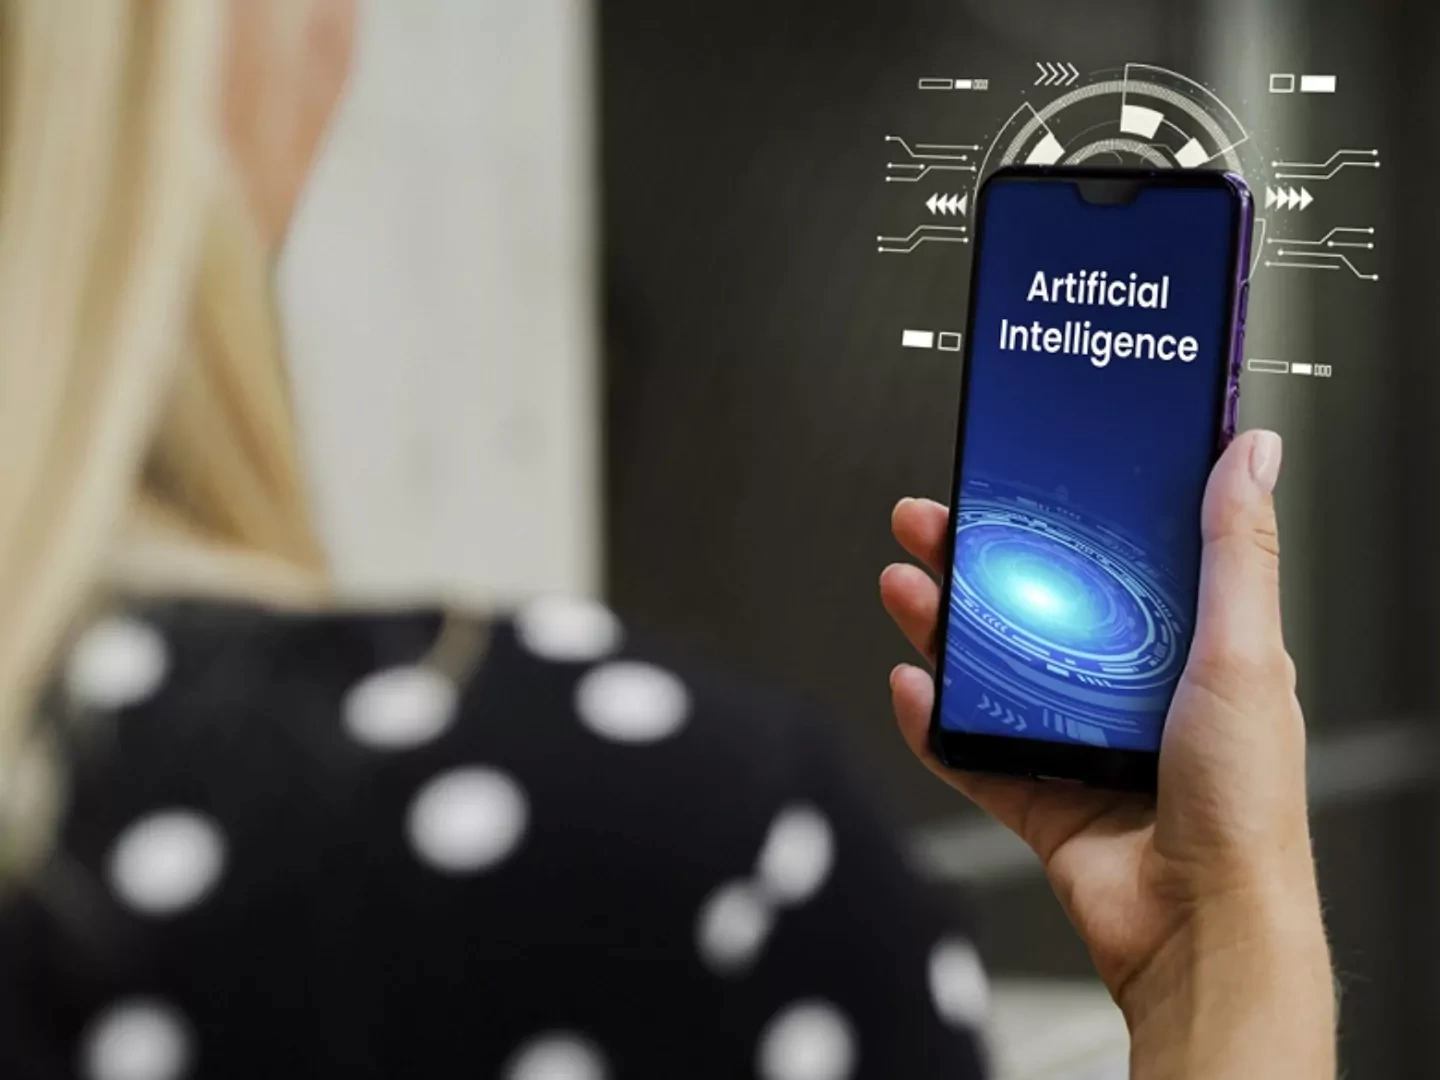 گوشی هوشمند سامسونگ با هوش مصنوعی مولد اختصاصی در راه است
